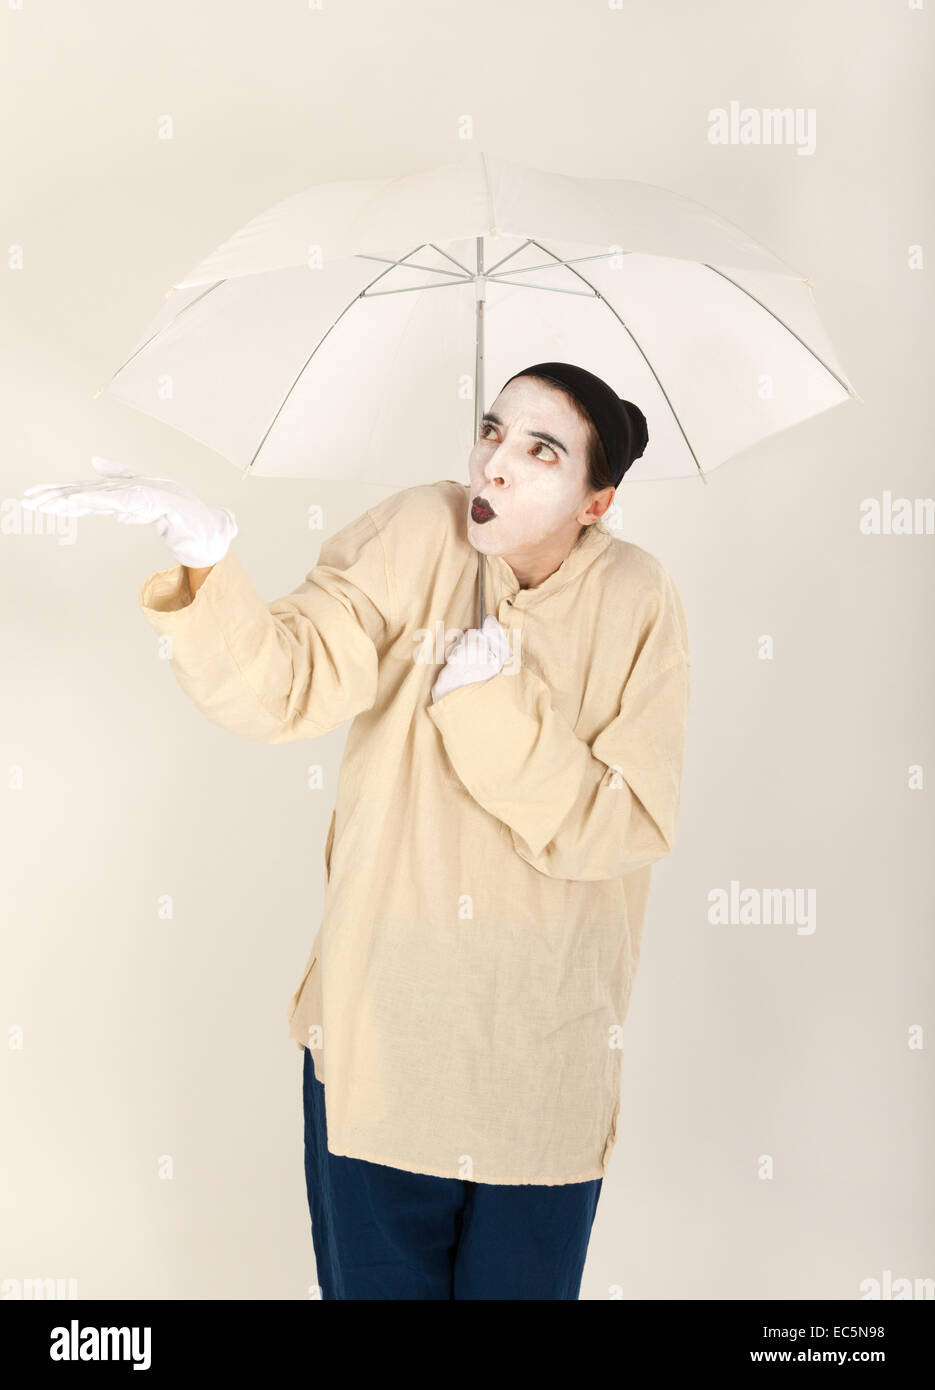 Le clown tenant un parapluie blanc dans la main Banque D'Images